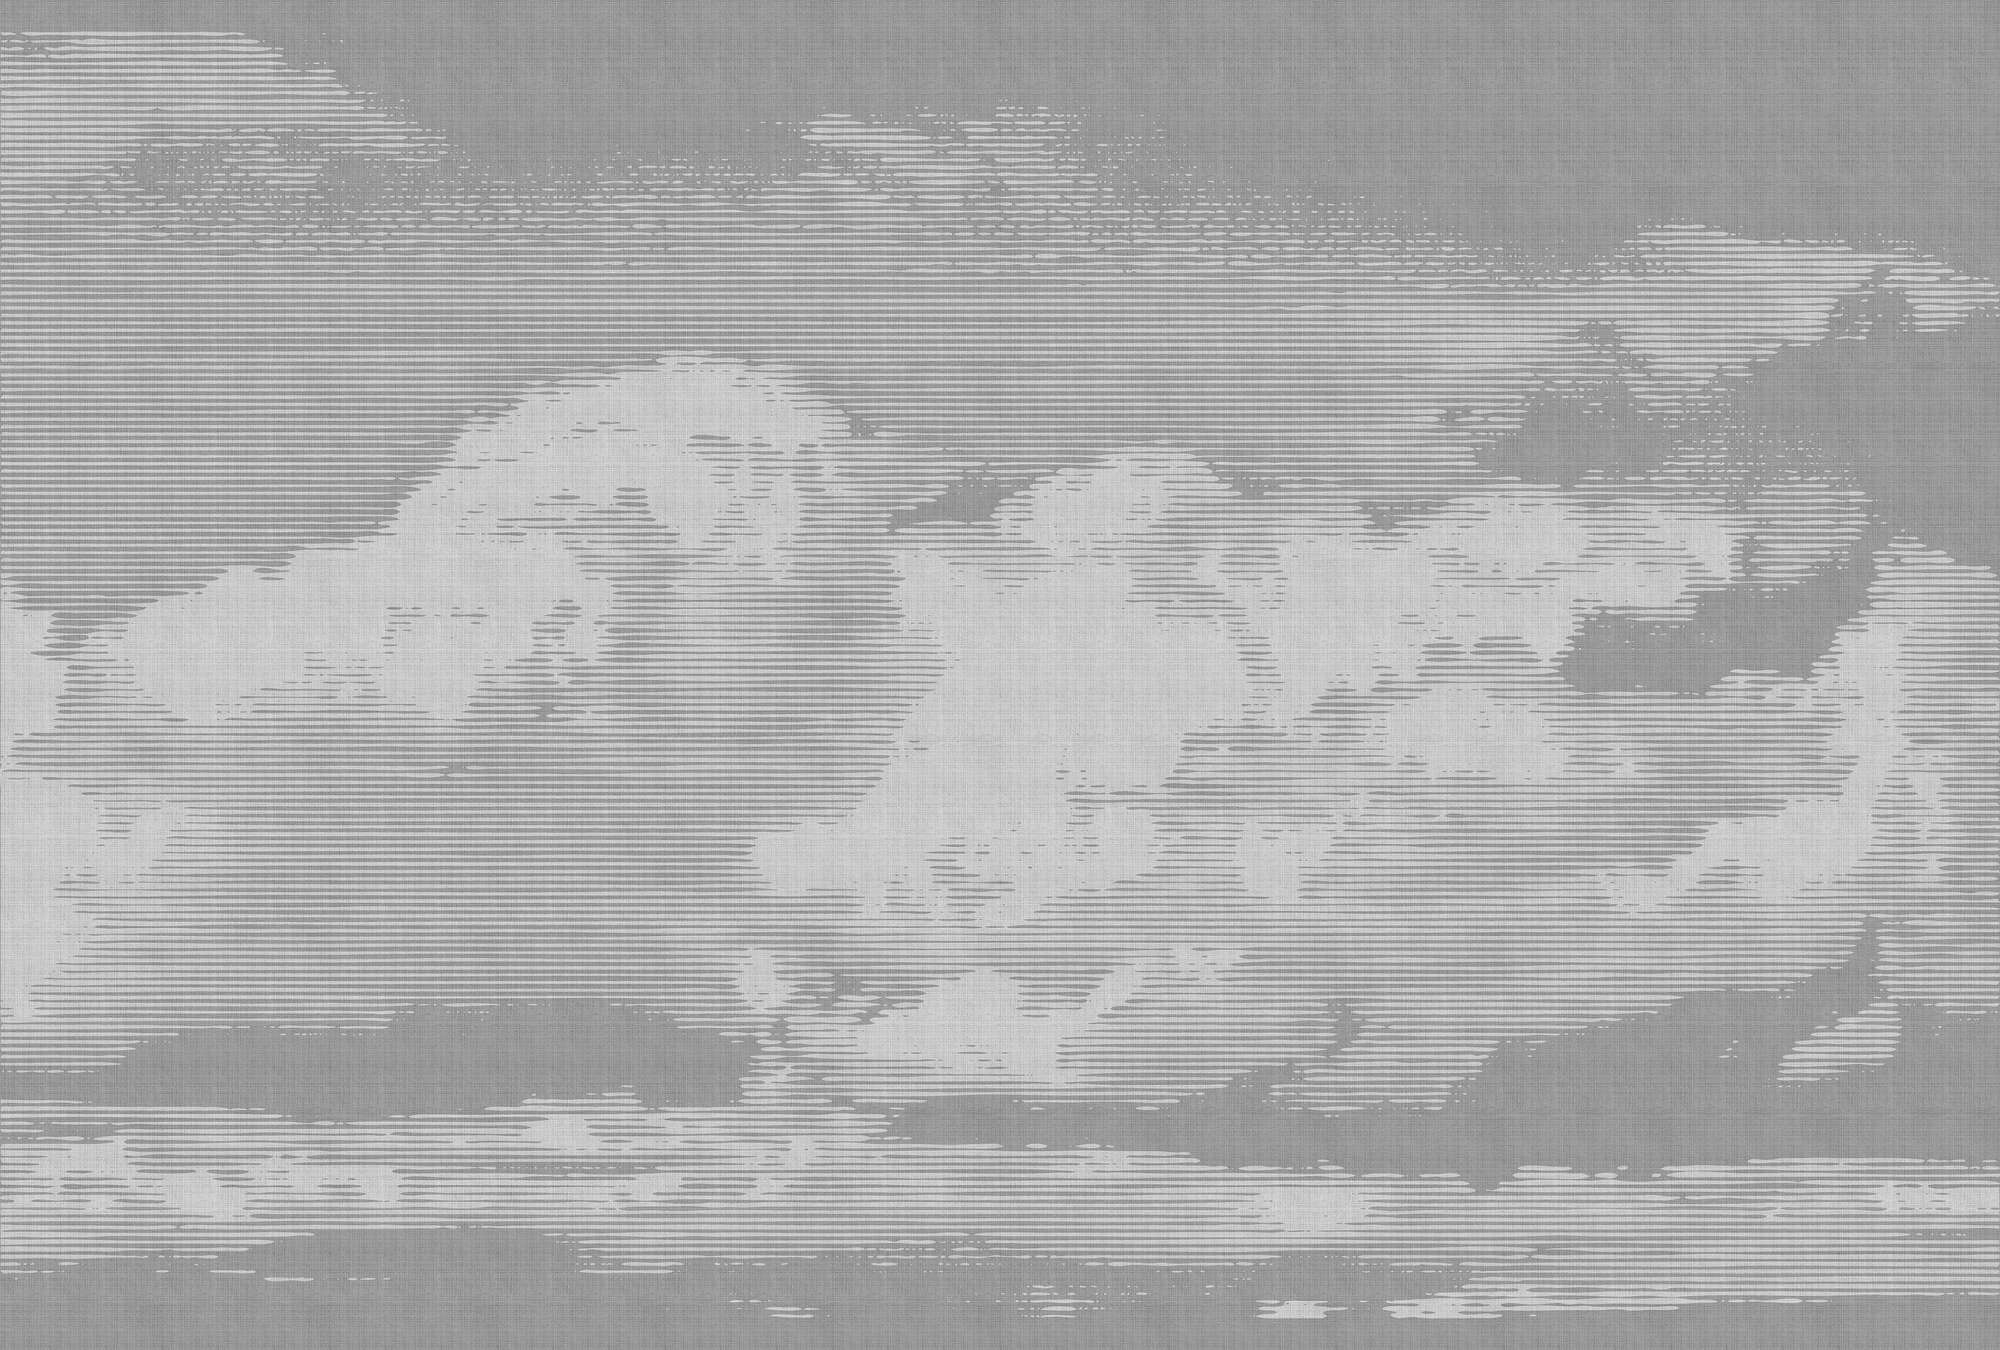             Nubes 2 - Papel pintado fotográfico celestial en estructura de lino natural con motivo de nubes - Gris, Blanco | Estructura No Tejido
        